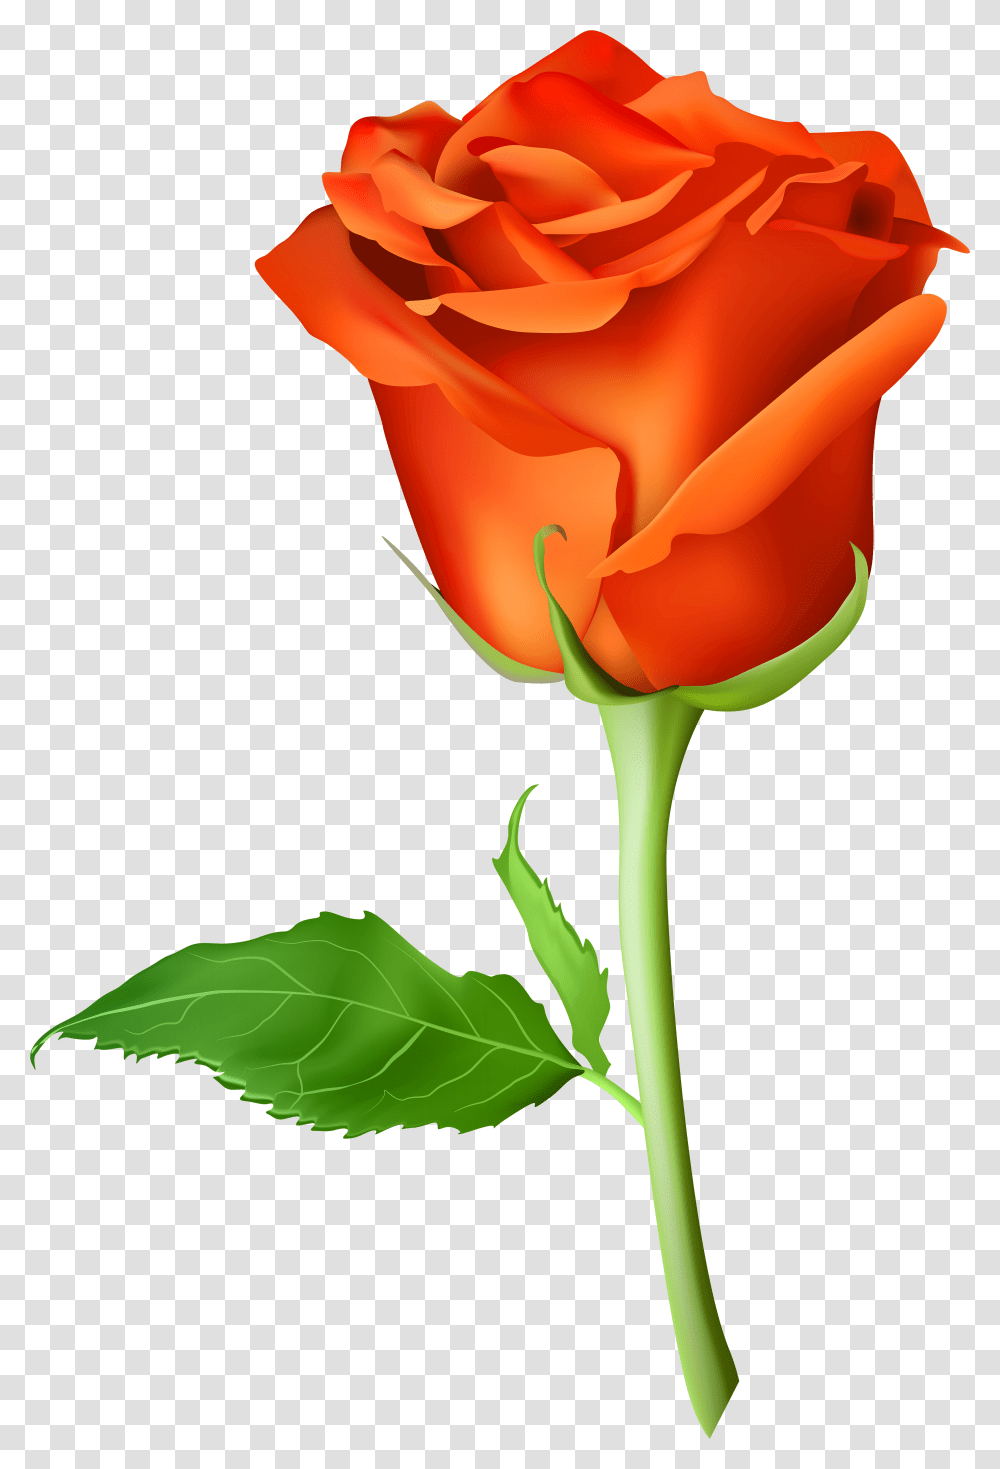 Rose Flower Images Free Download Orange Rose Transparent Png